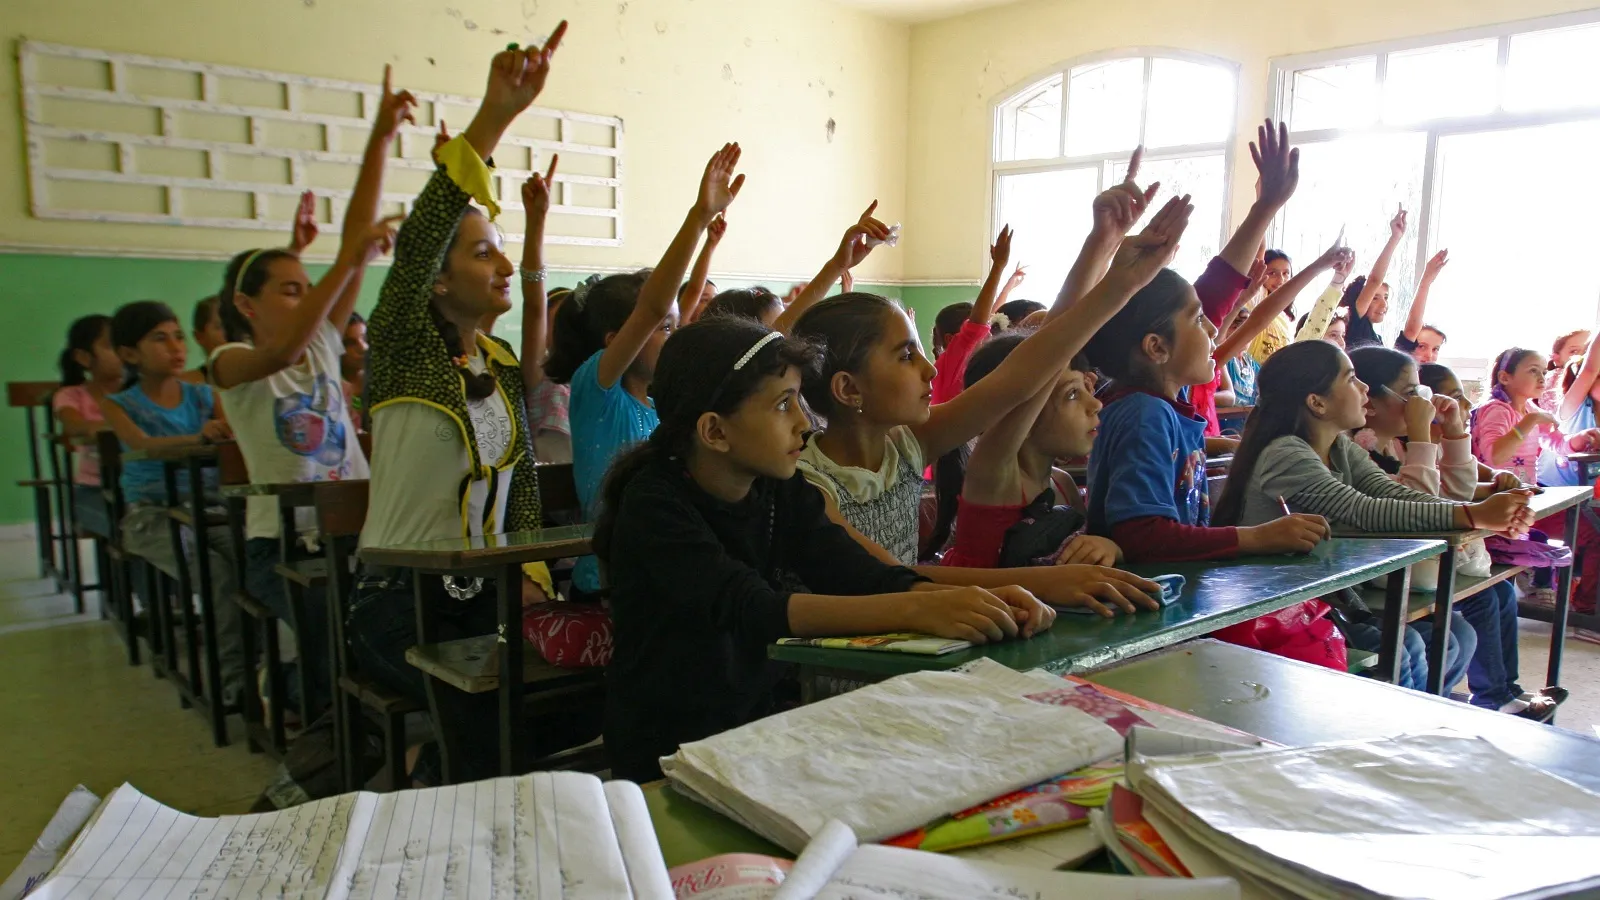 "التربية اللبنانية" ترفض تسجيل السوريين في المدارس الخاصة وتعتبره "توطين مقنع"